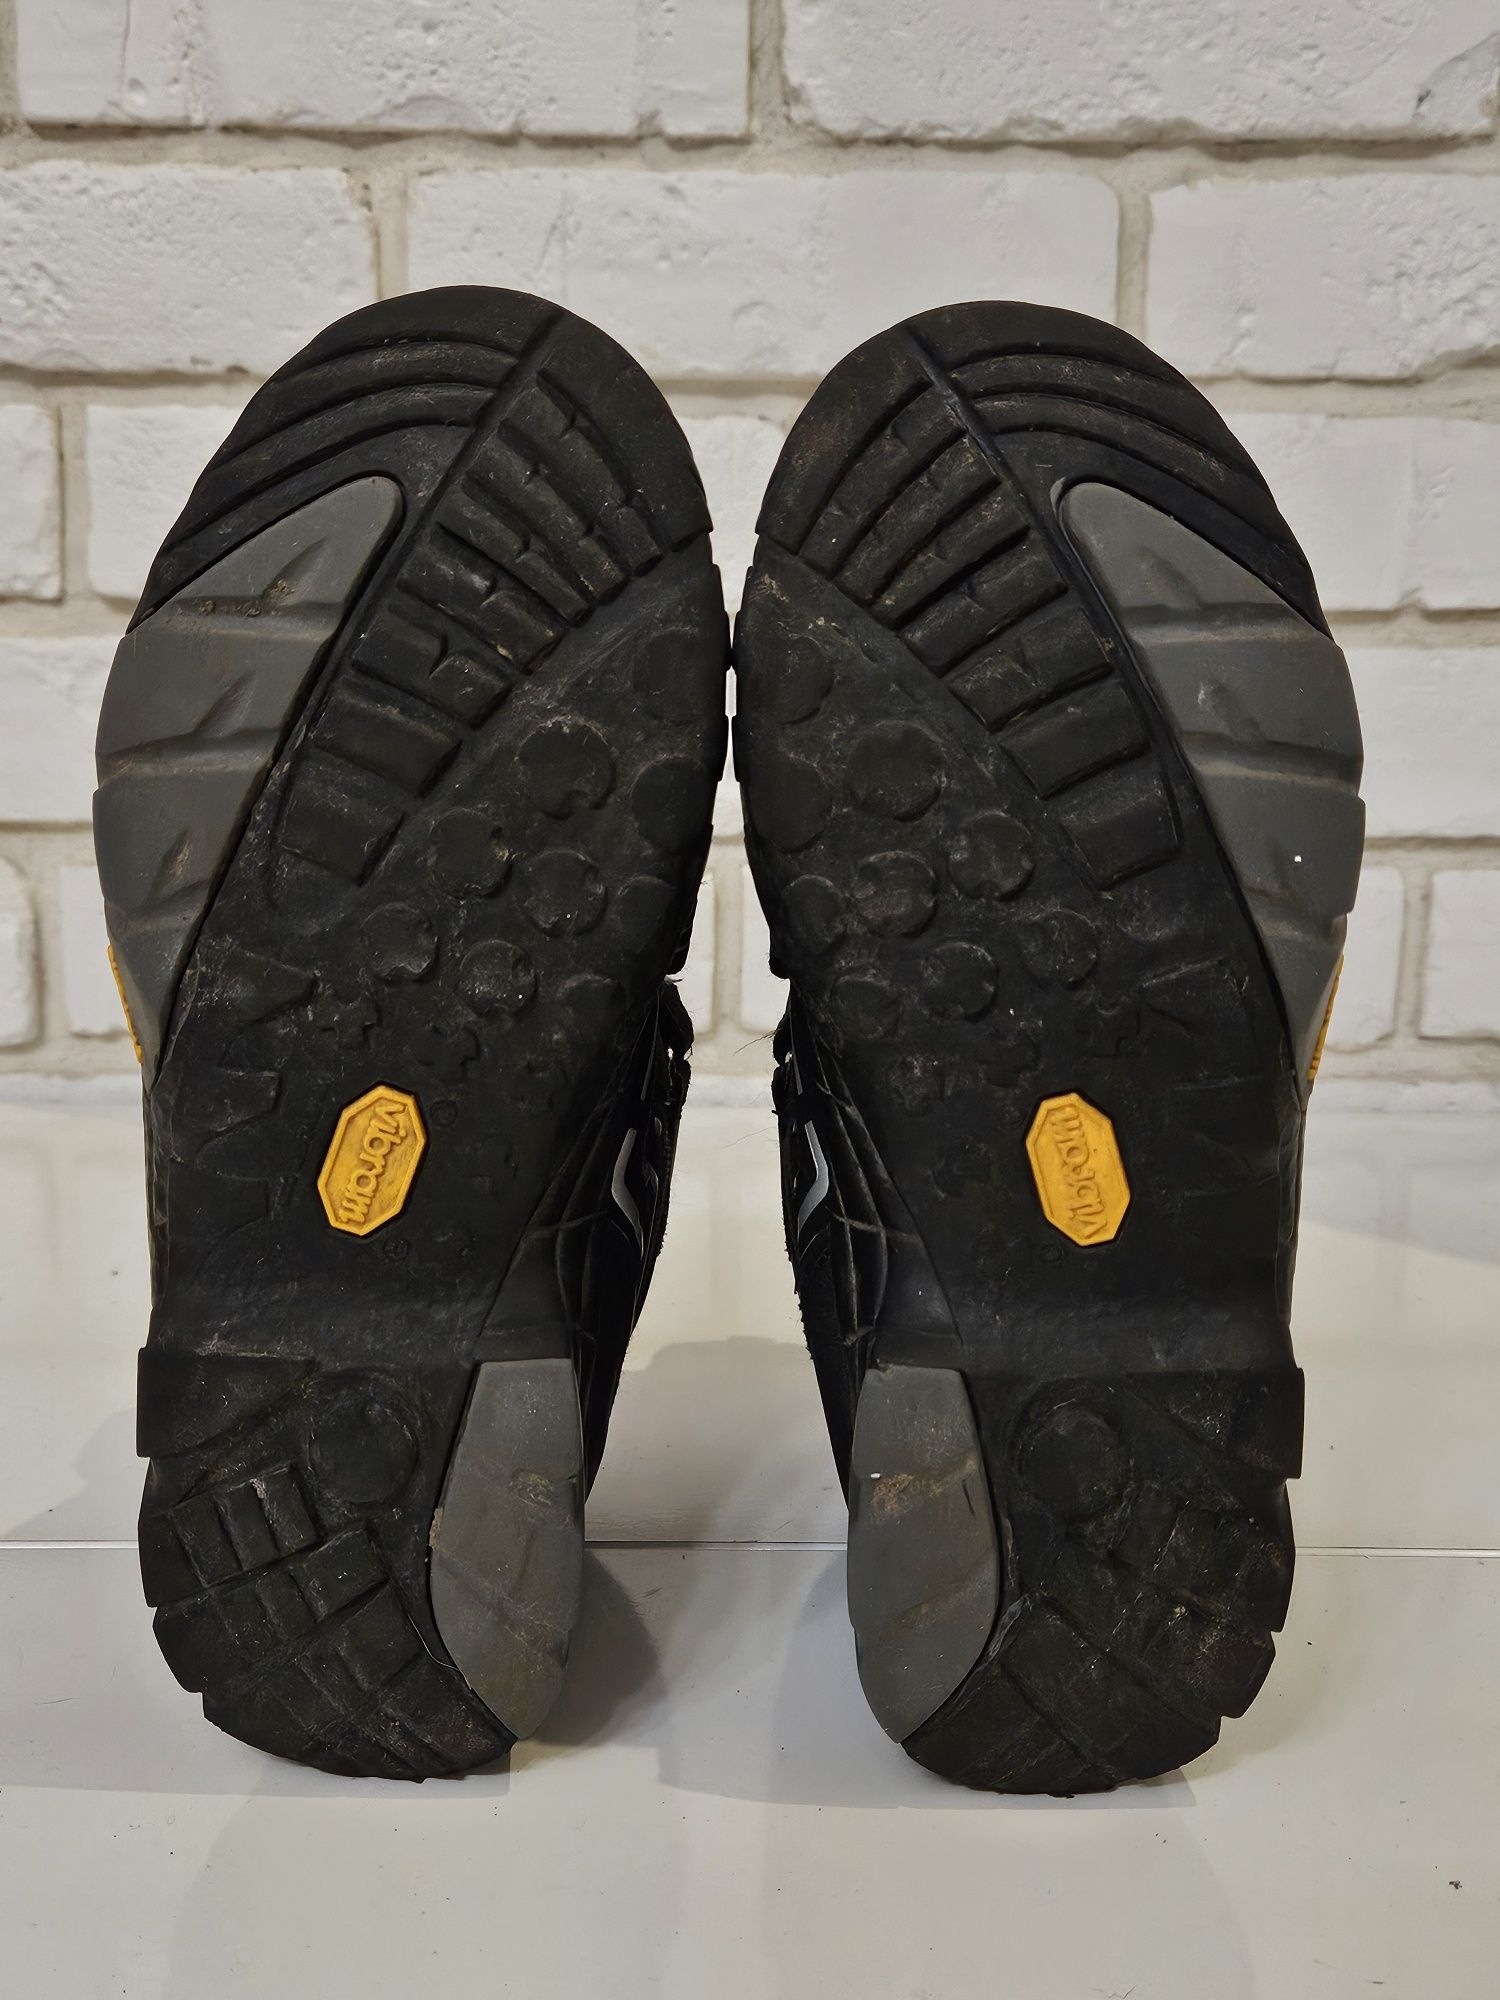 Buty śniegowce buciki zimowe McKinley Vibram Aquamax r. 35